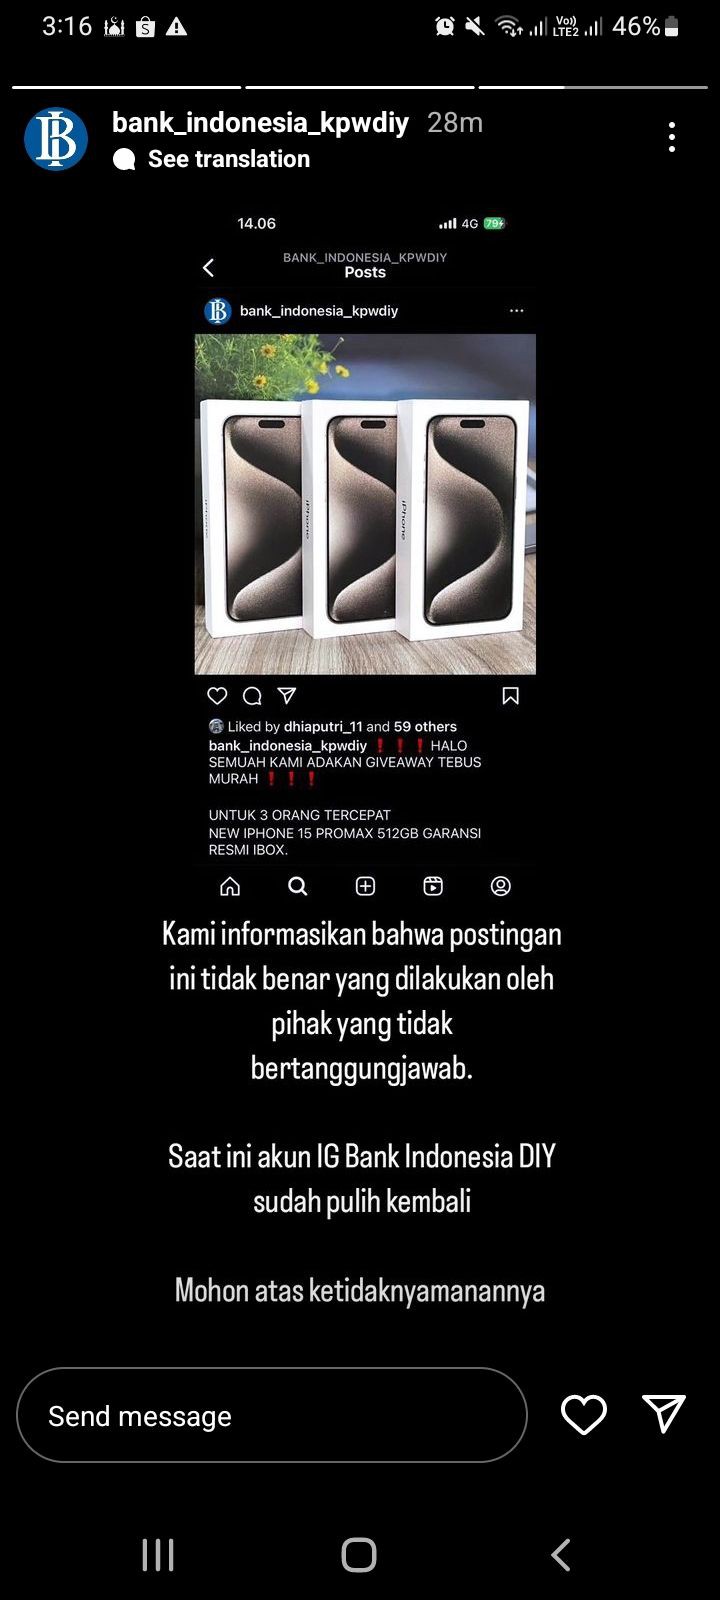 Akun Instagram Bank Indonesia Diretas, Tawarkan Tebus Murah iPhone